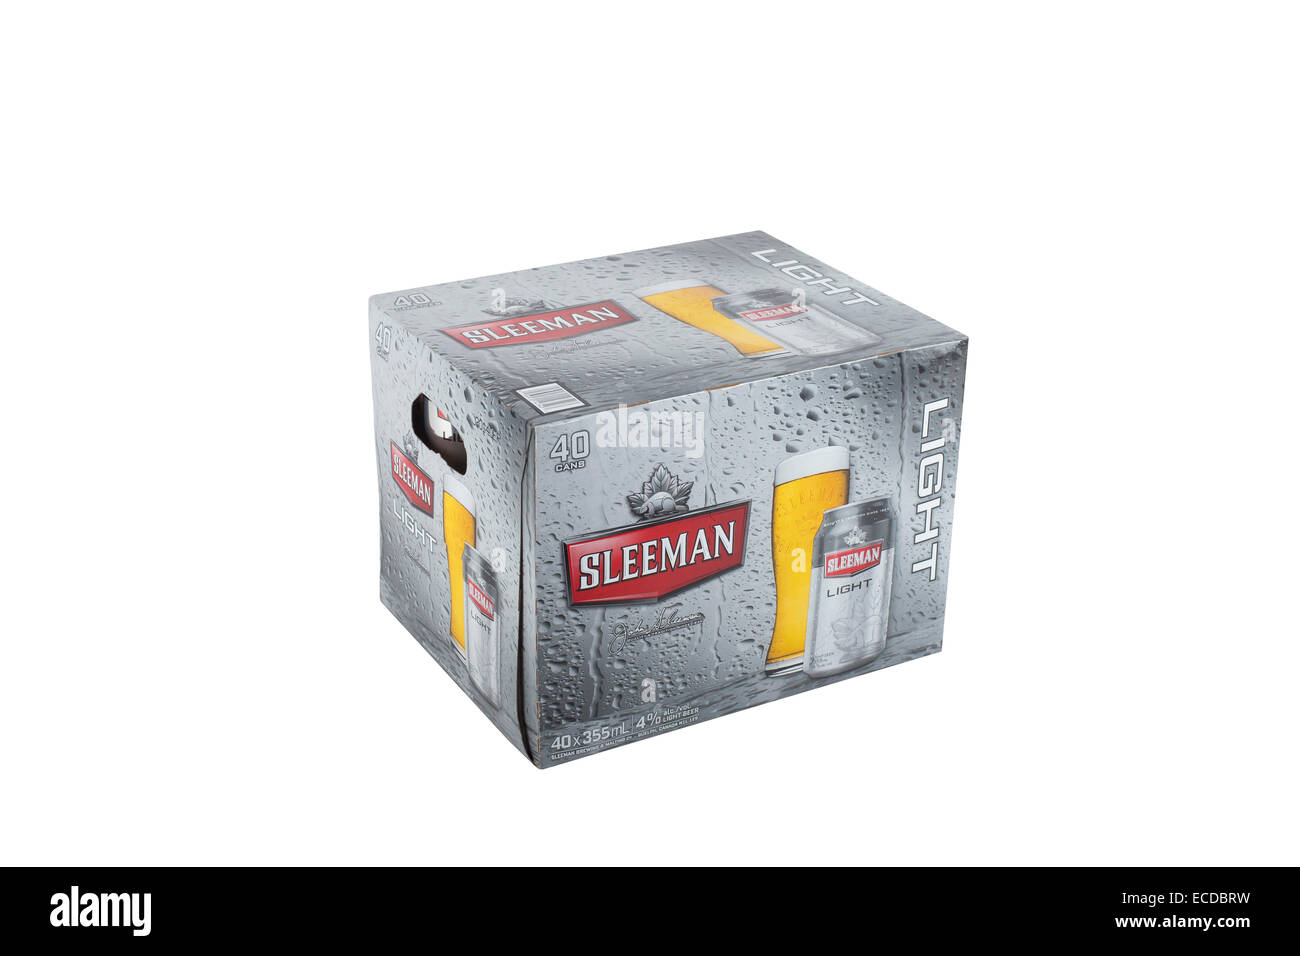 Eine Packung 40 355 ml Dosen Bier Sleeman Licht wird über einen rein weißen Hintergrund abgebildet. Stockfoto